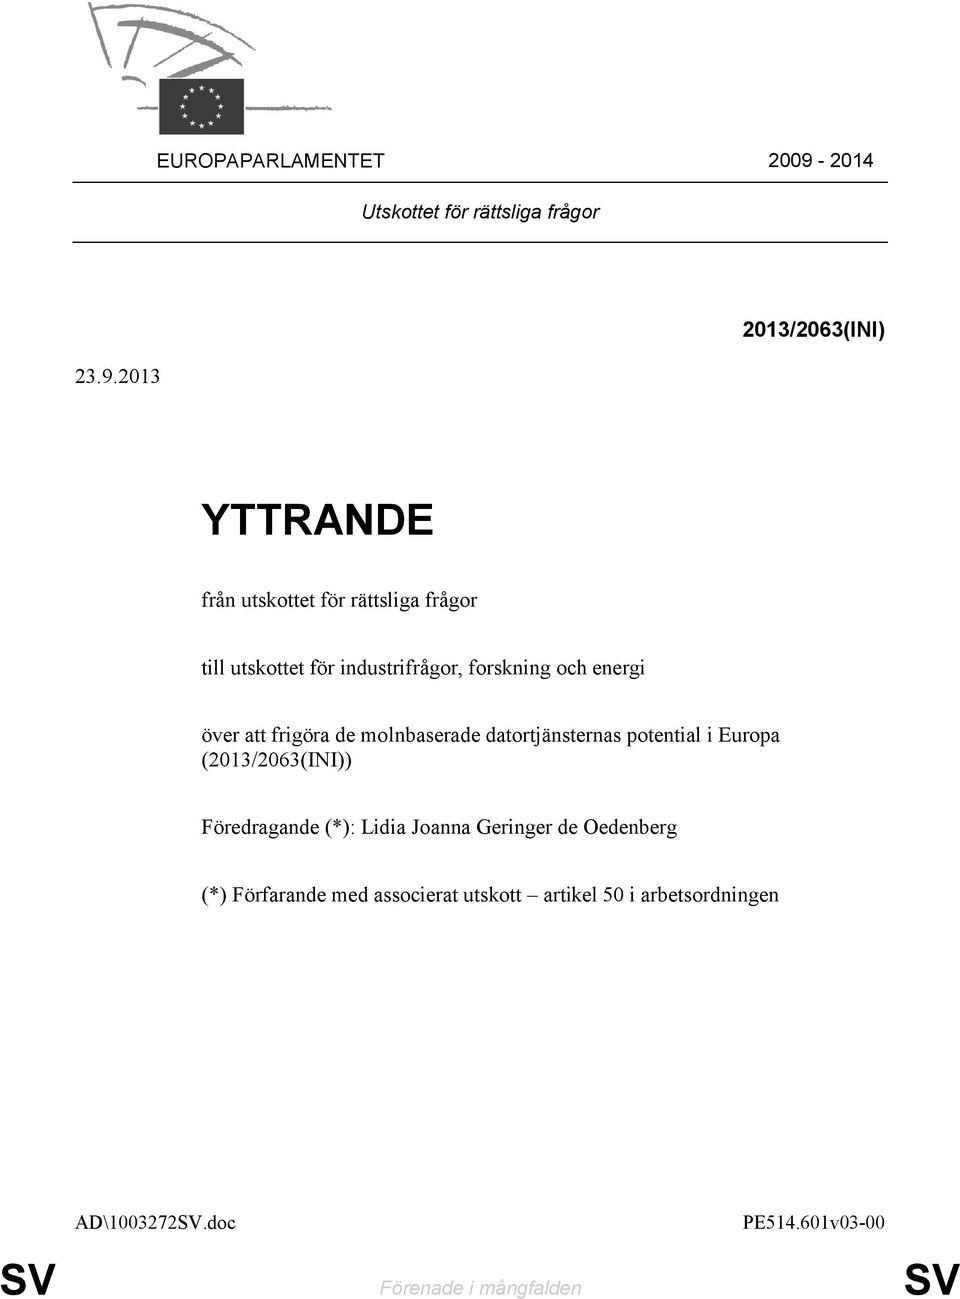 2013 2013/2063(INI) YTTRANDE från utskottet för rättsliga frågor till utskottet för industrifrågor, forskning